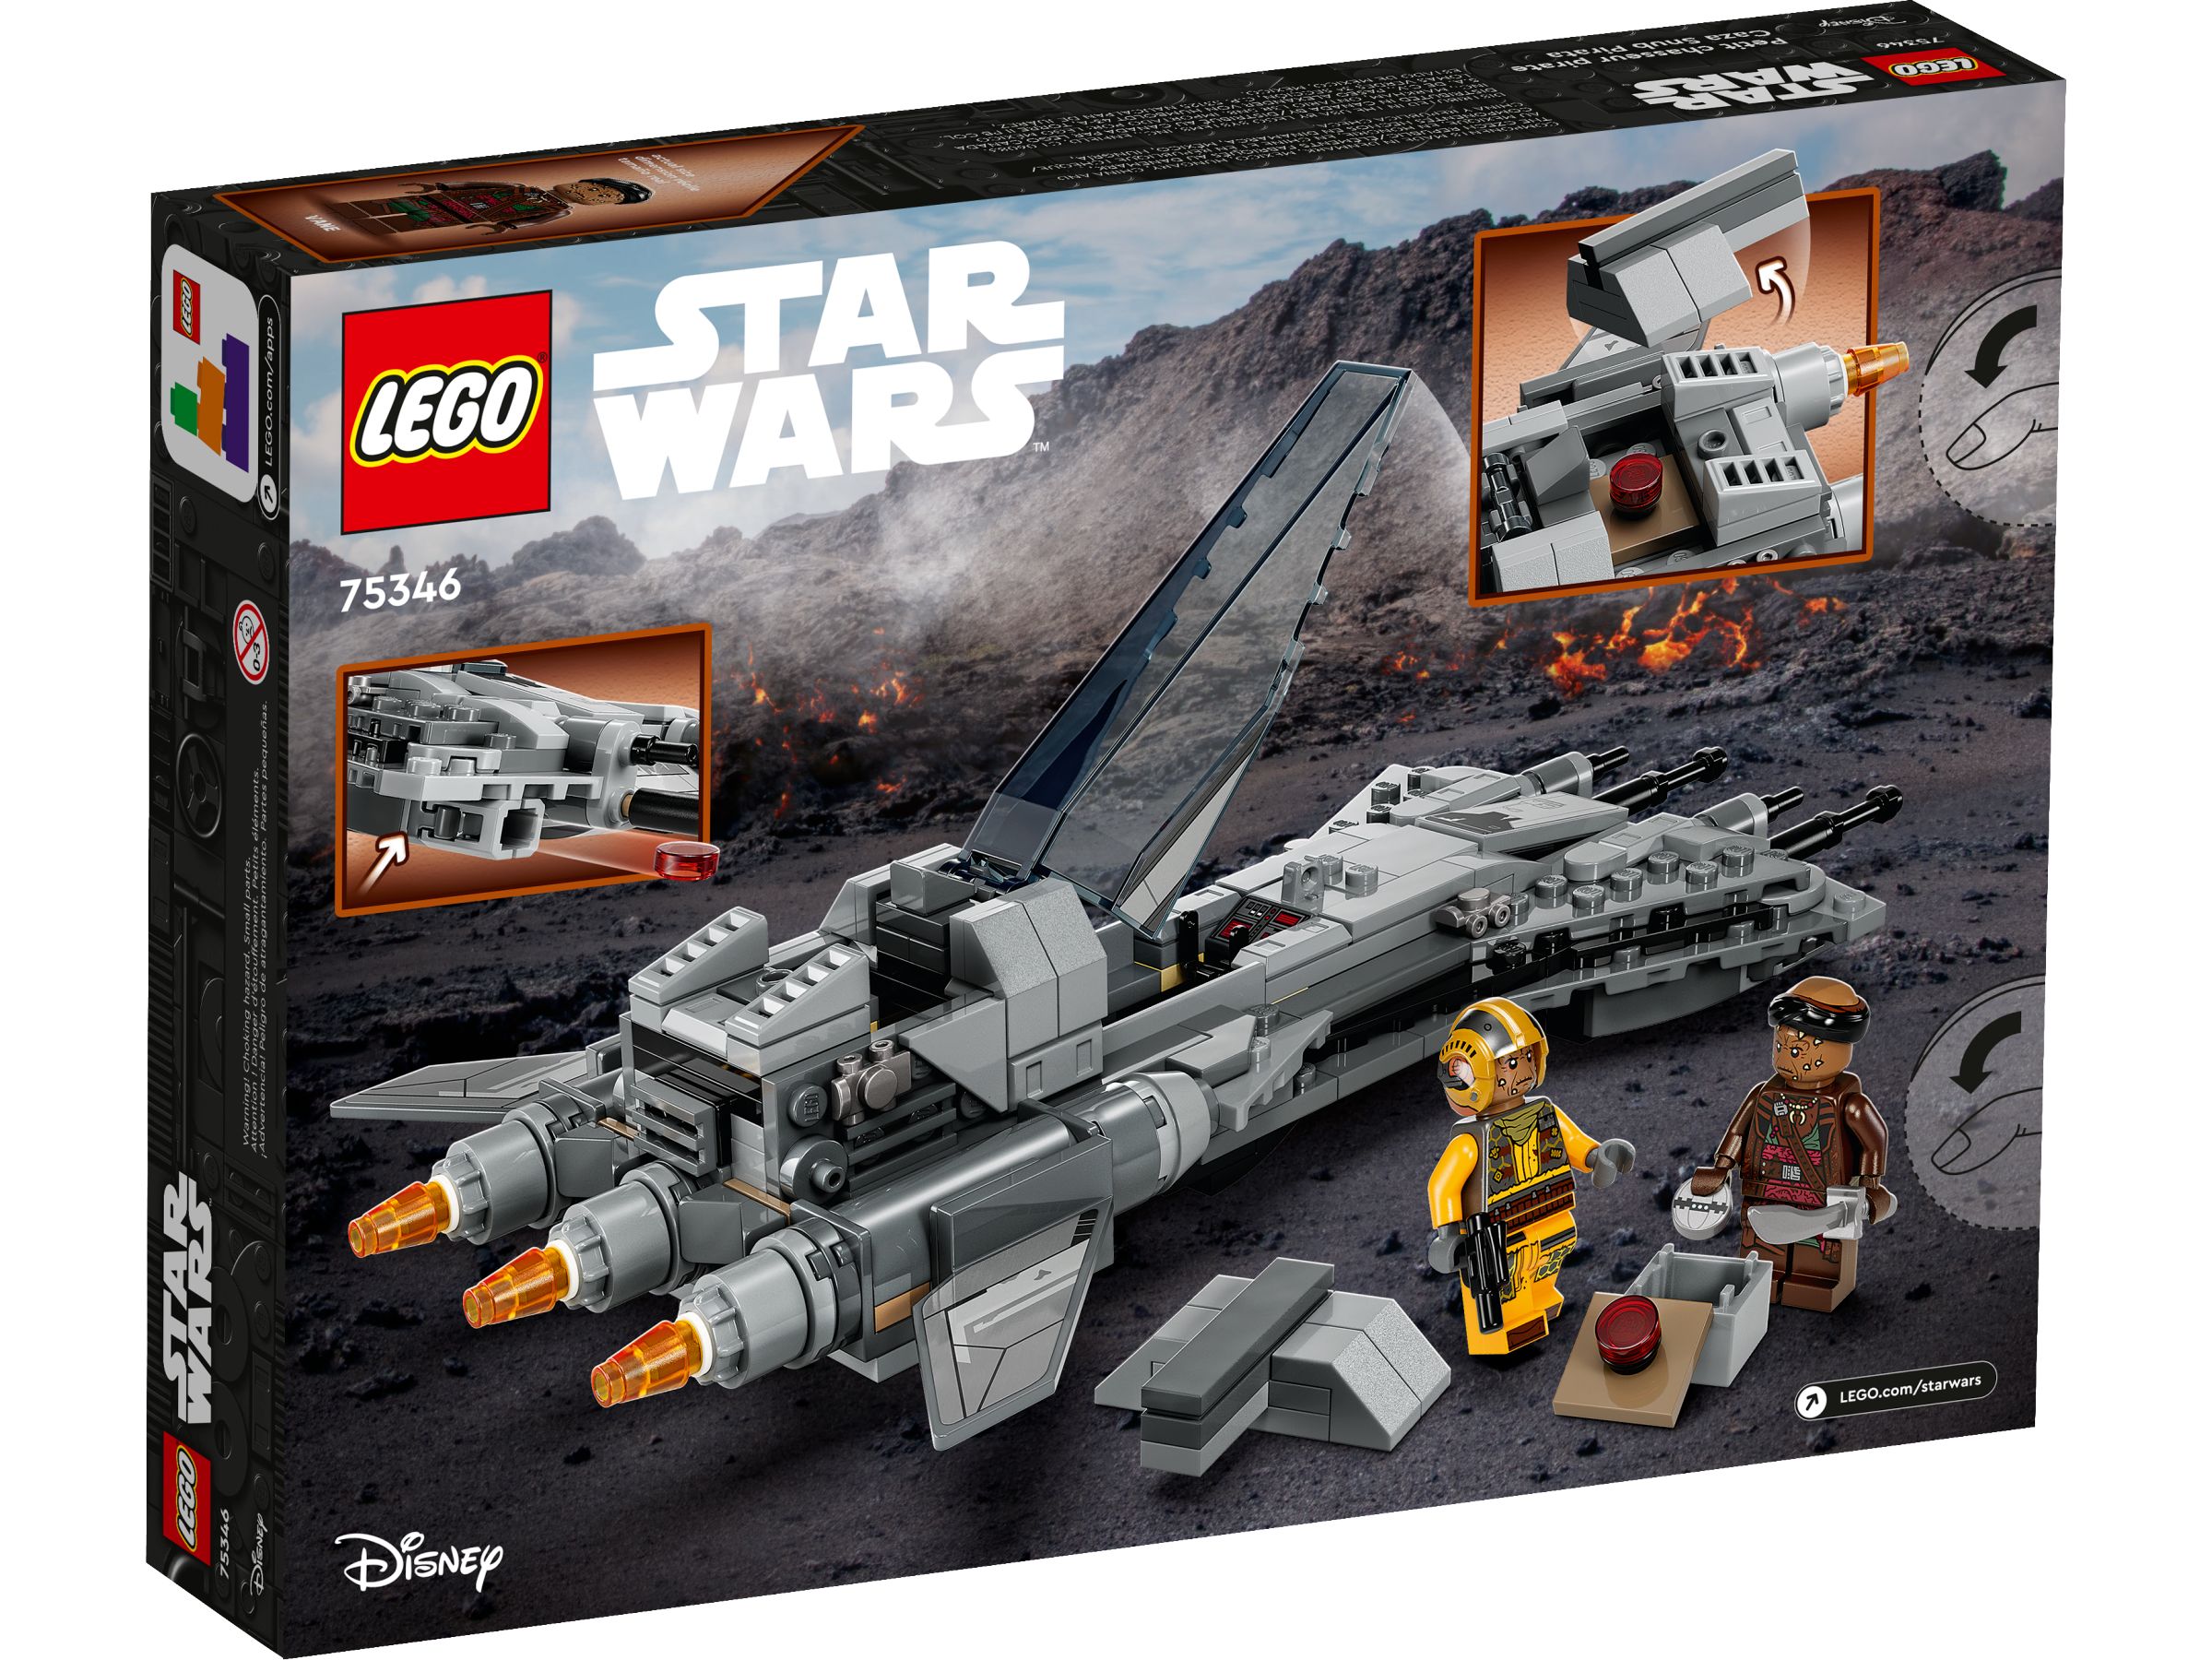 LEGO Star Wars 75346 Snubfighter der Piraten LEGO_75346_Box5_v39.jpg